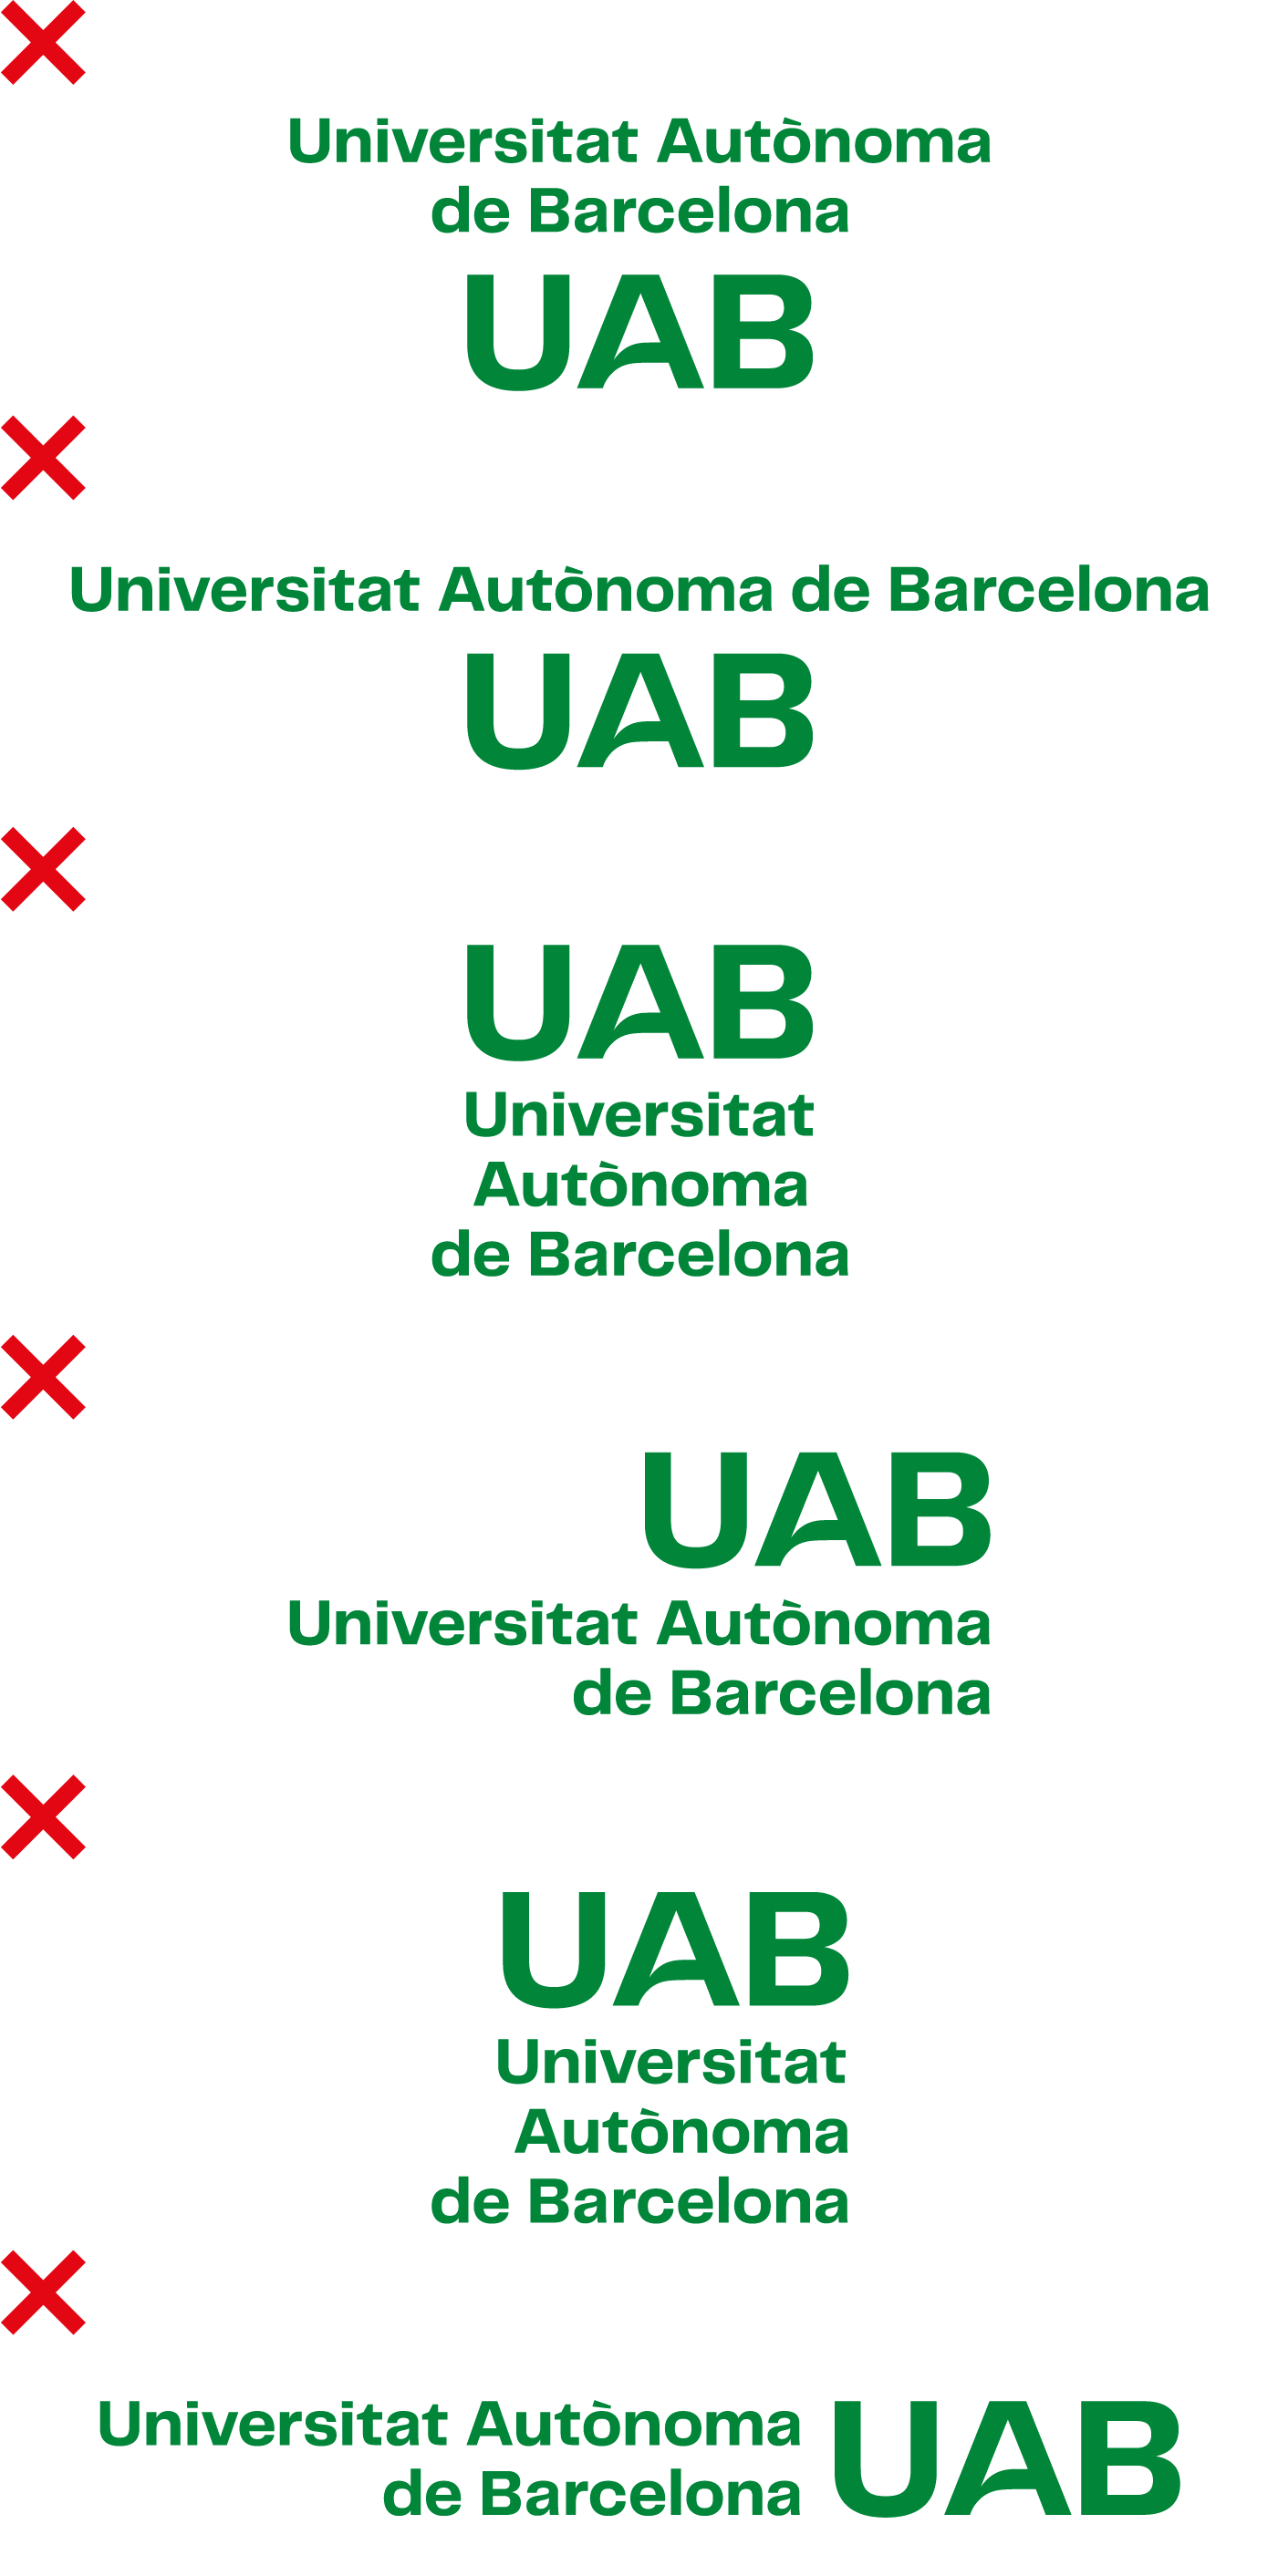 No alterar la disposició dels elements que componen la marca UAB.